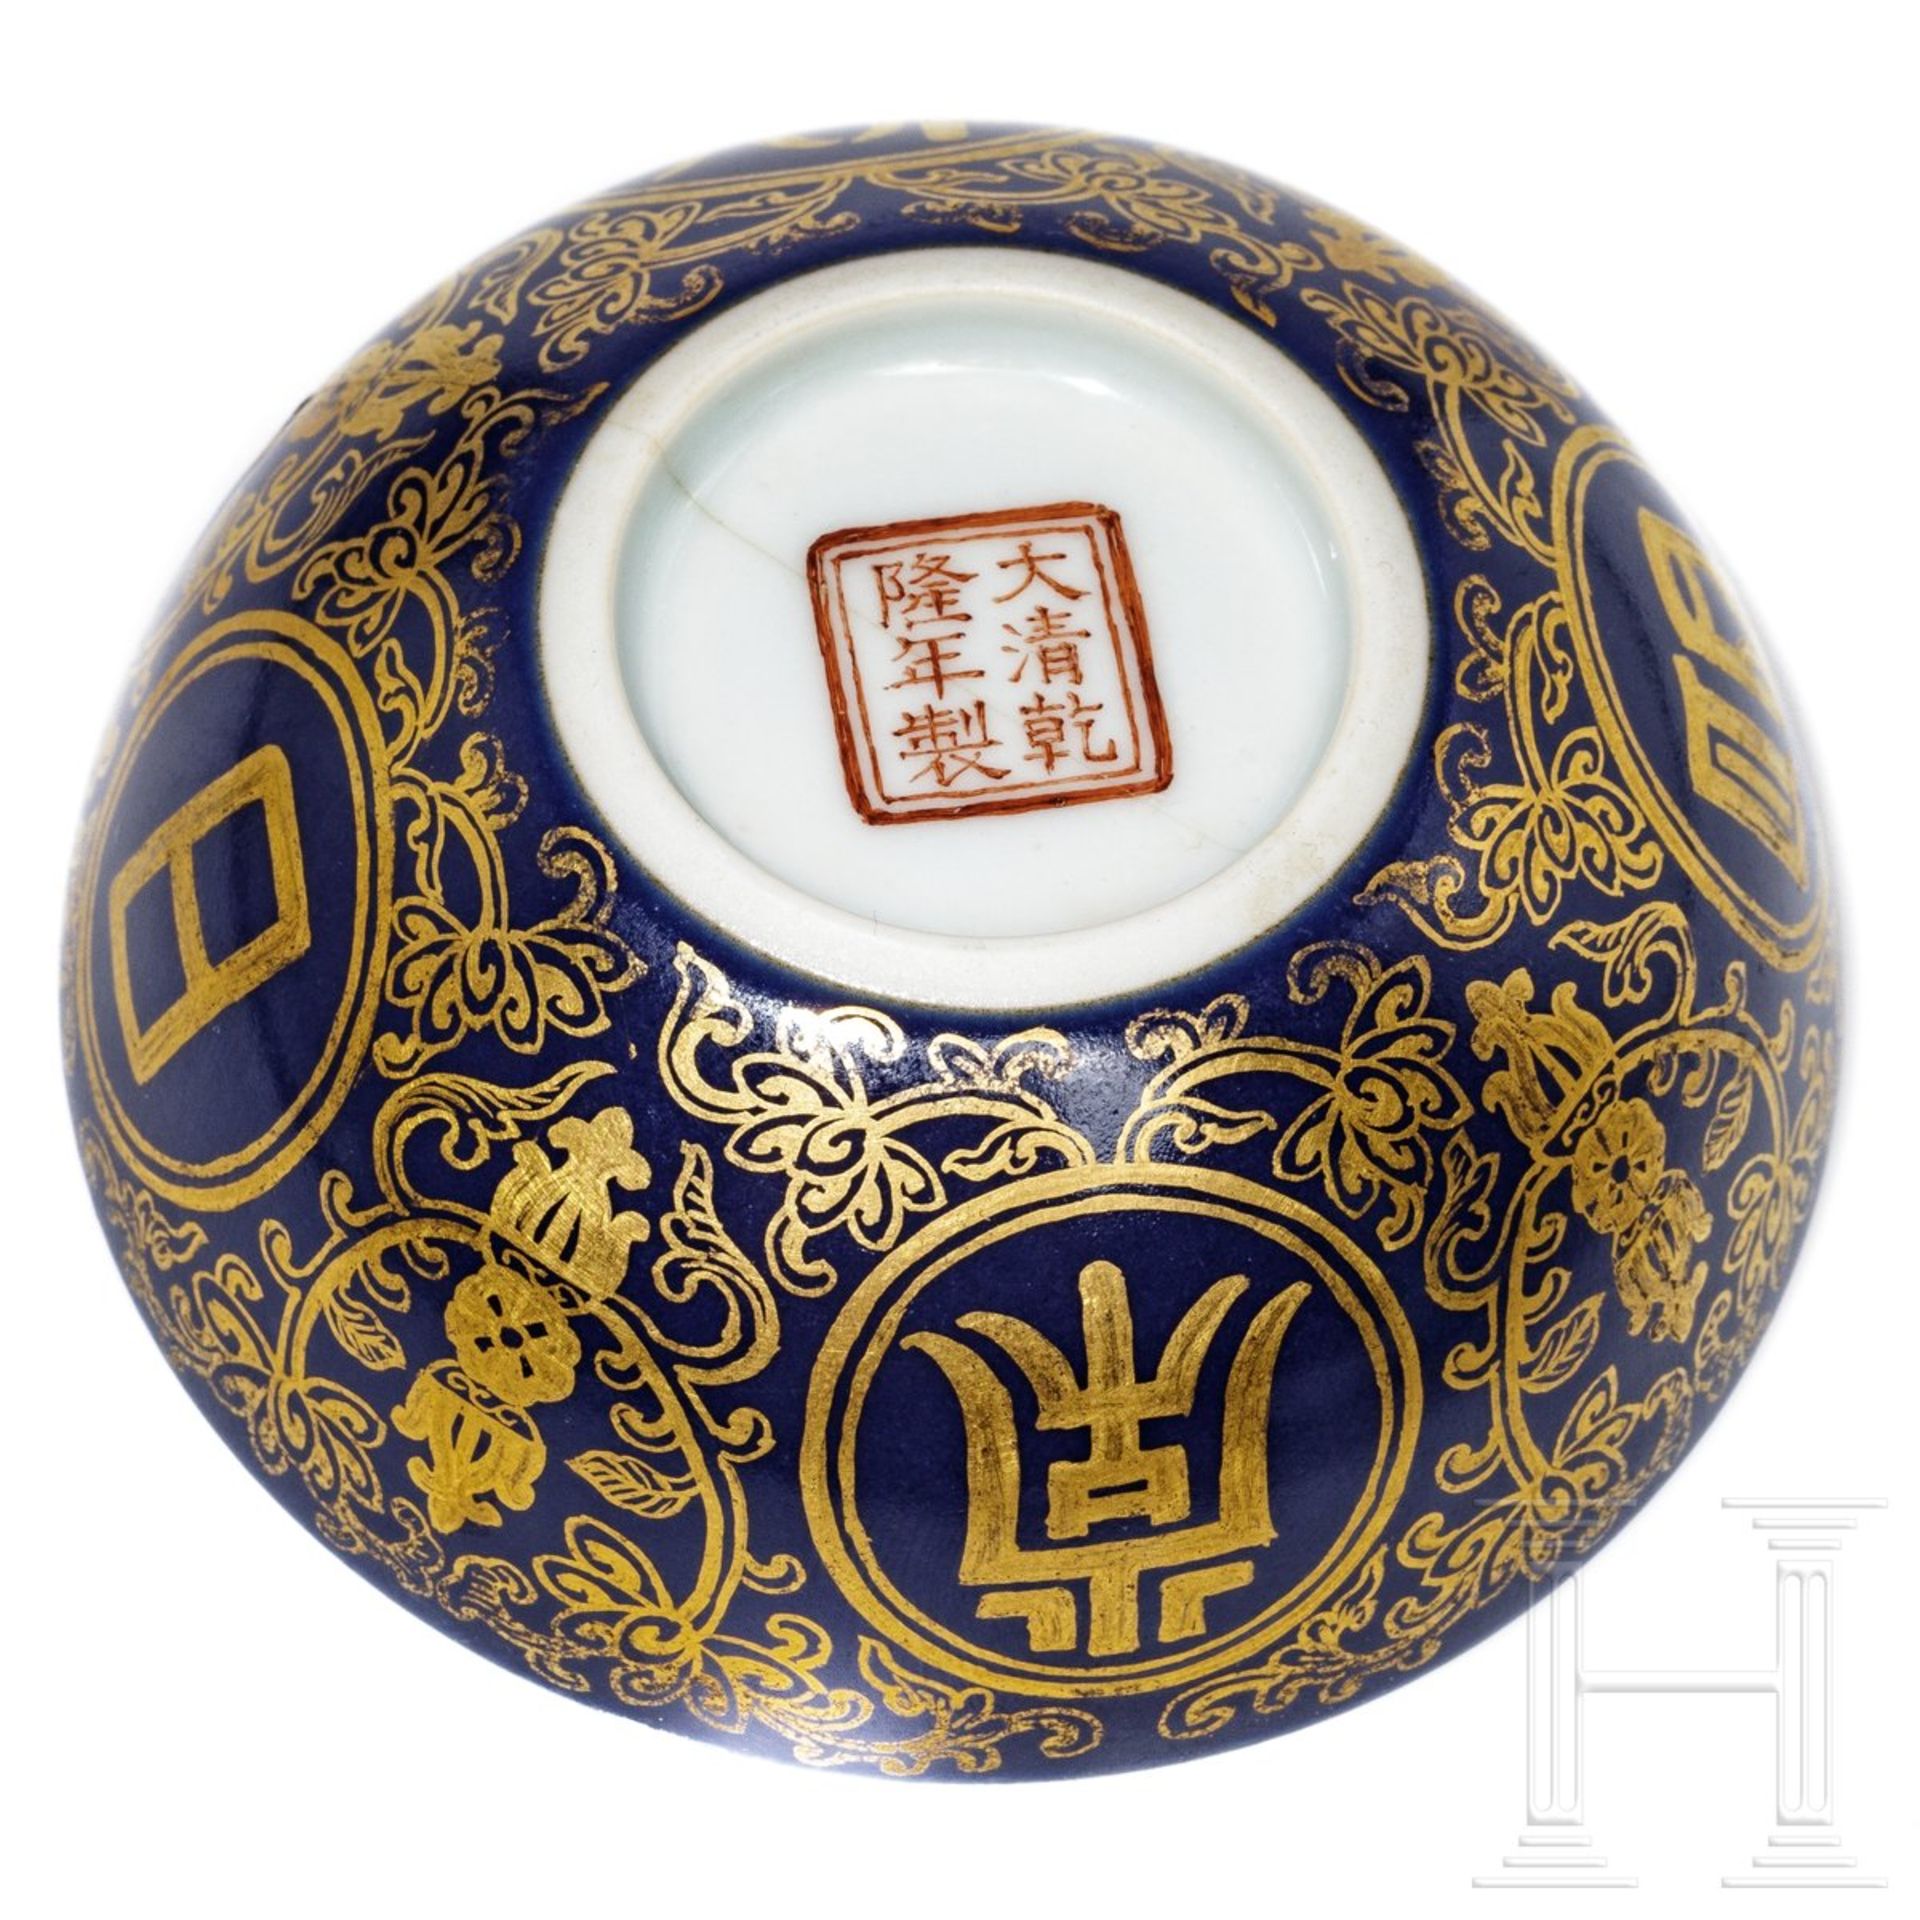 Blaugrundiges Teeschälchen mit Vergoldung und Qianlong-Sechszeichenmarke, China, 1736 - 1795 - Bild 4 aus 4